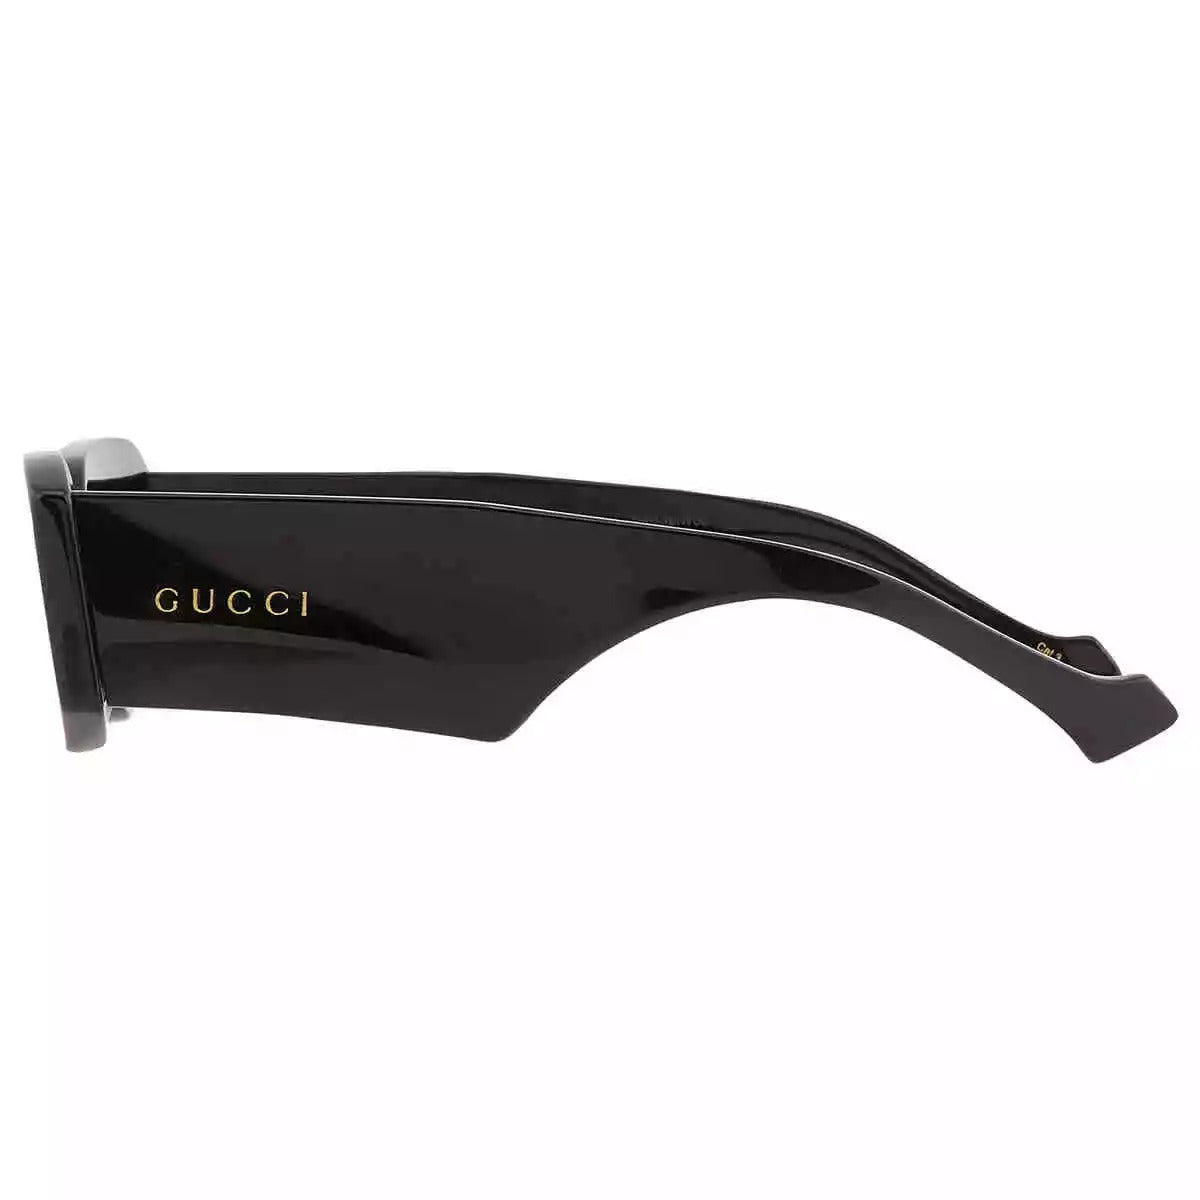 Gucci GG1426S-001 54mm New Sunglasses